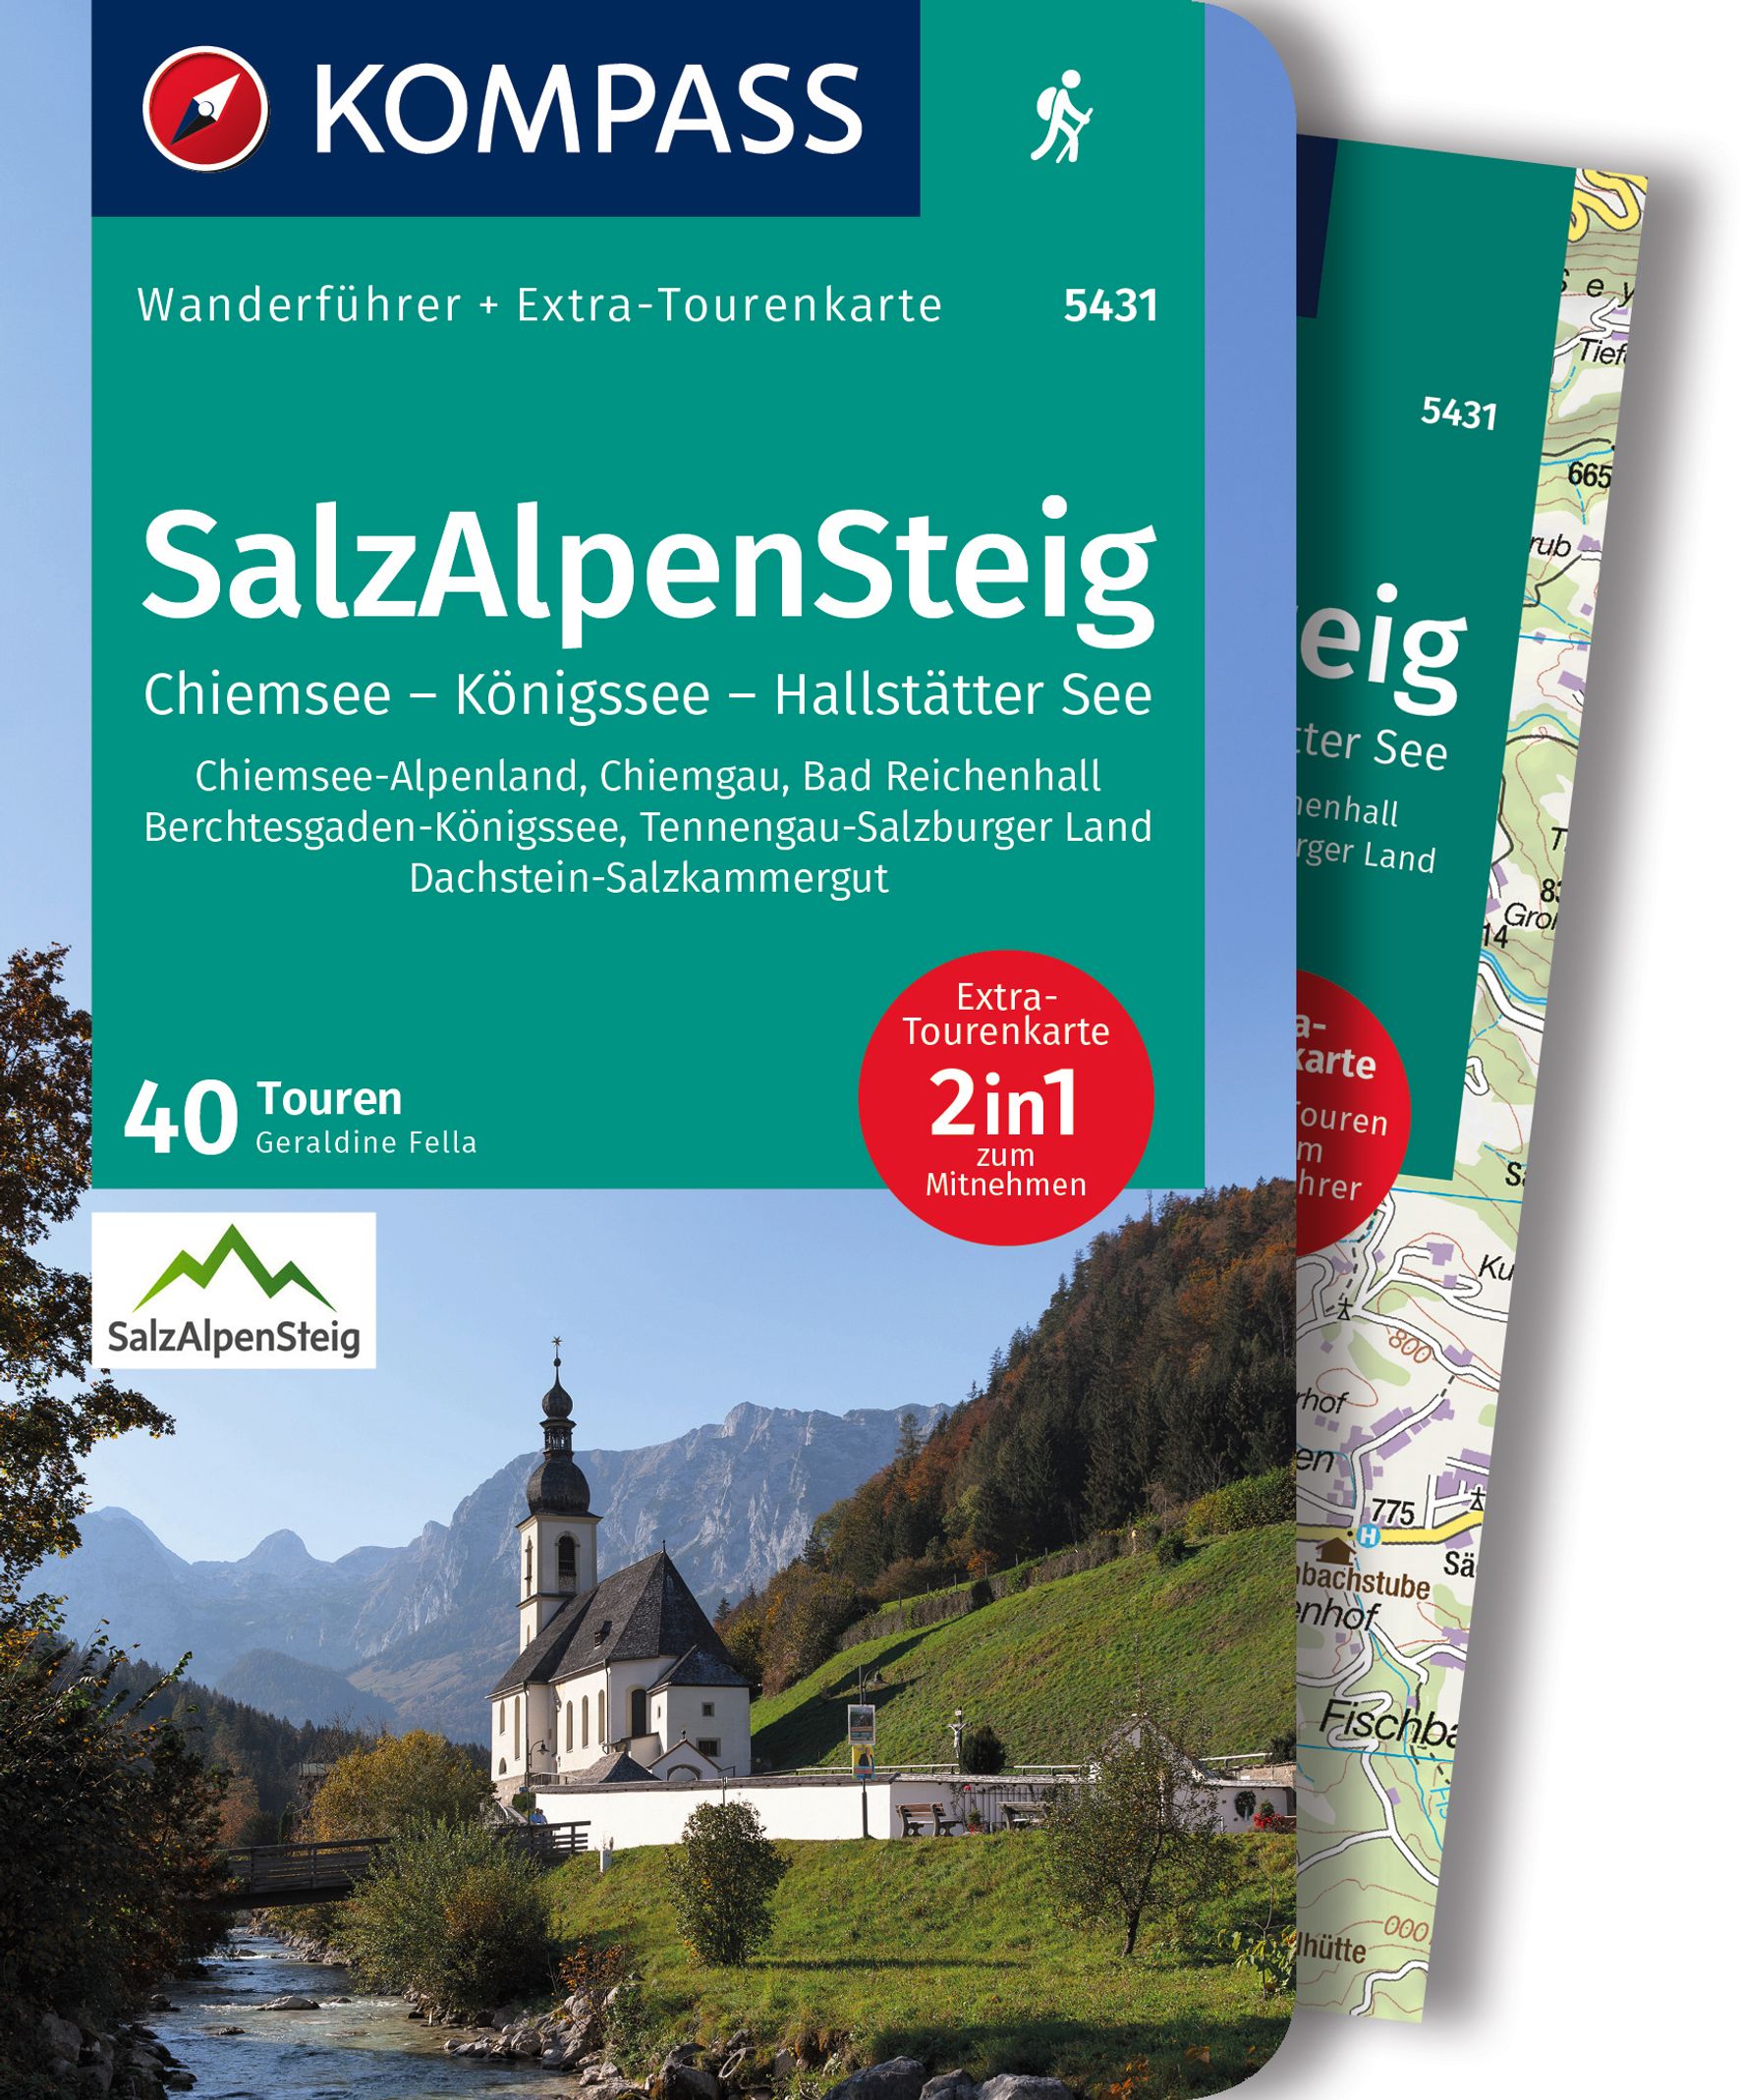 MAIRDUMONT SalzAlpenSteig, Chiemsee, Königssee, Hallstätter See, 40 Touren mit Extra-Tourenkarte